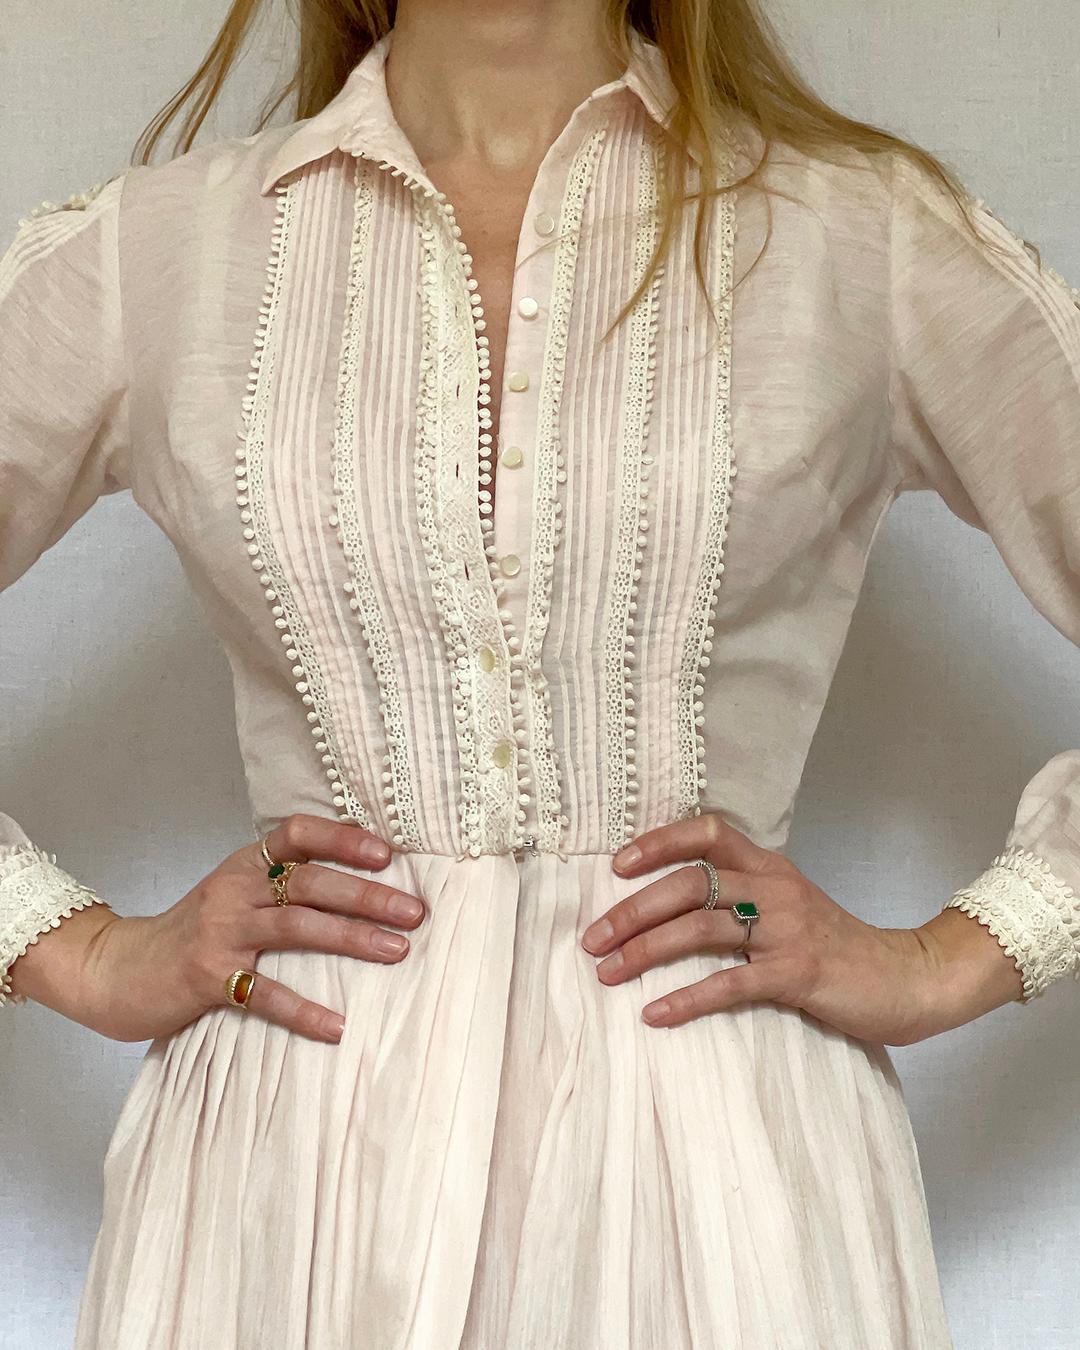  Vintage 1950s Shirtwaist Dress by L'AIGLON For Sale 4